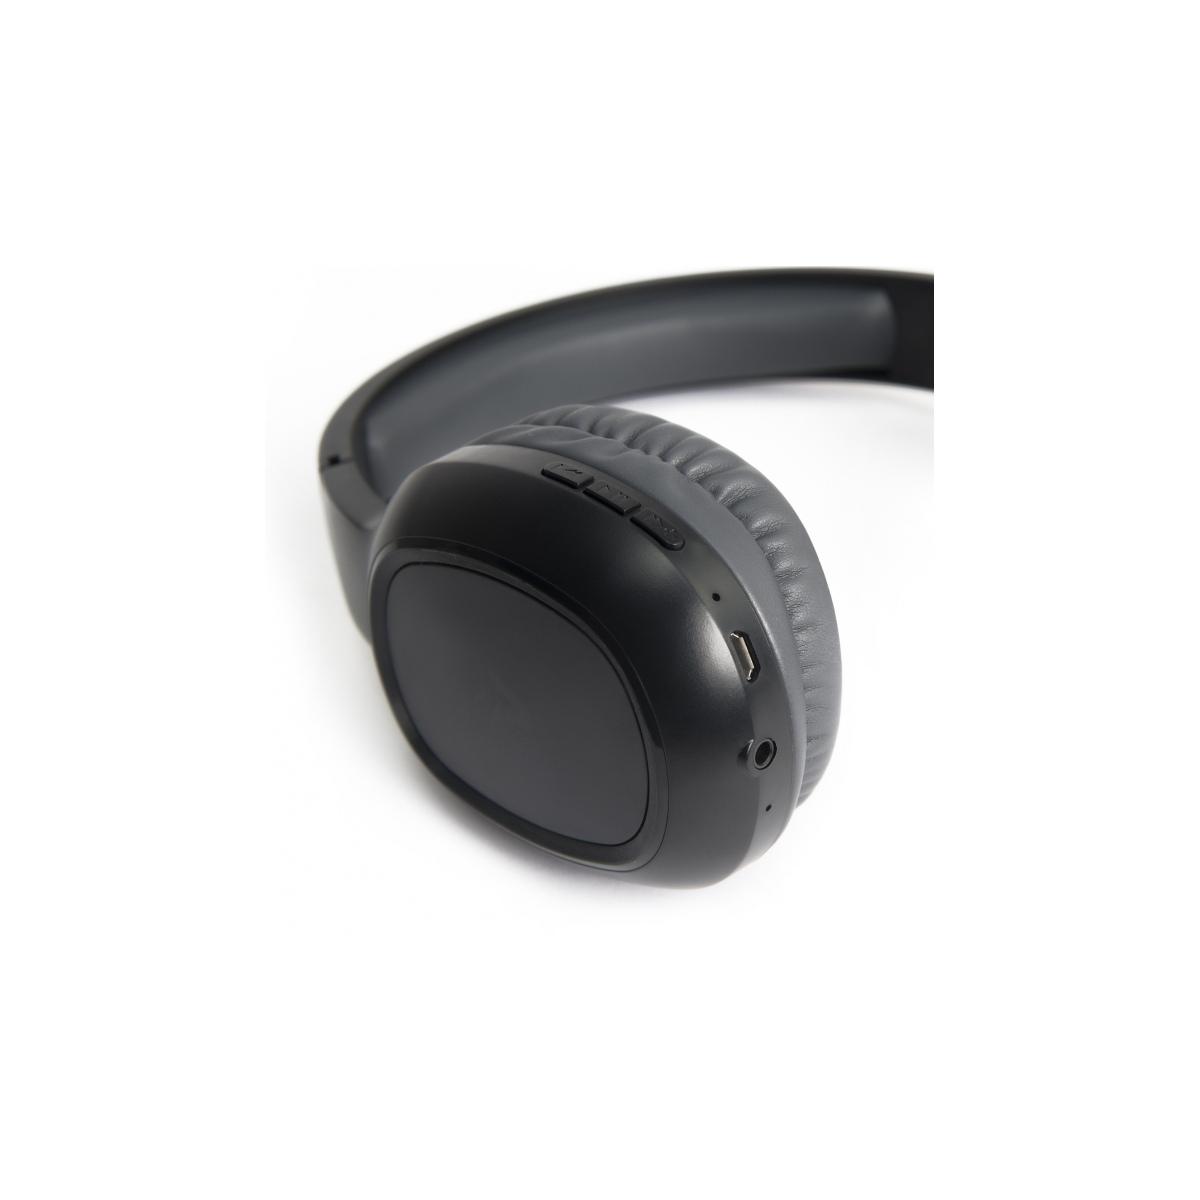 Cuffie Headphones Bluetooth 5.0 Vultech HBT-10K Nere Con Microfono e Controllo Traccia